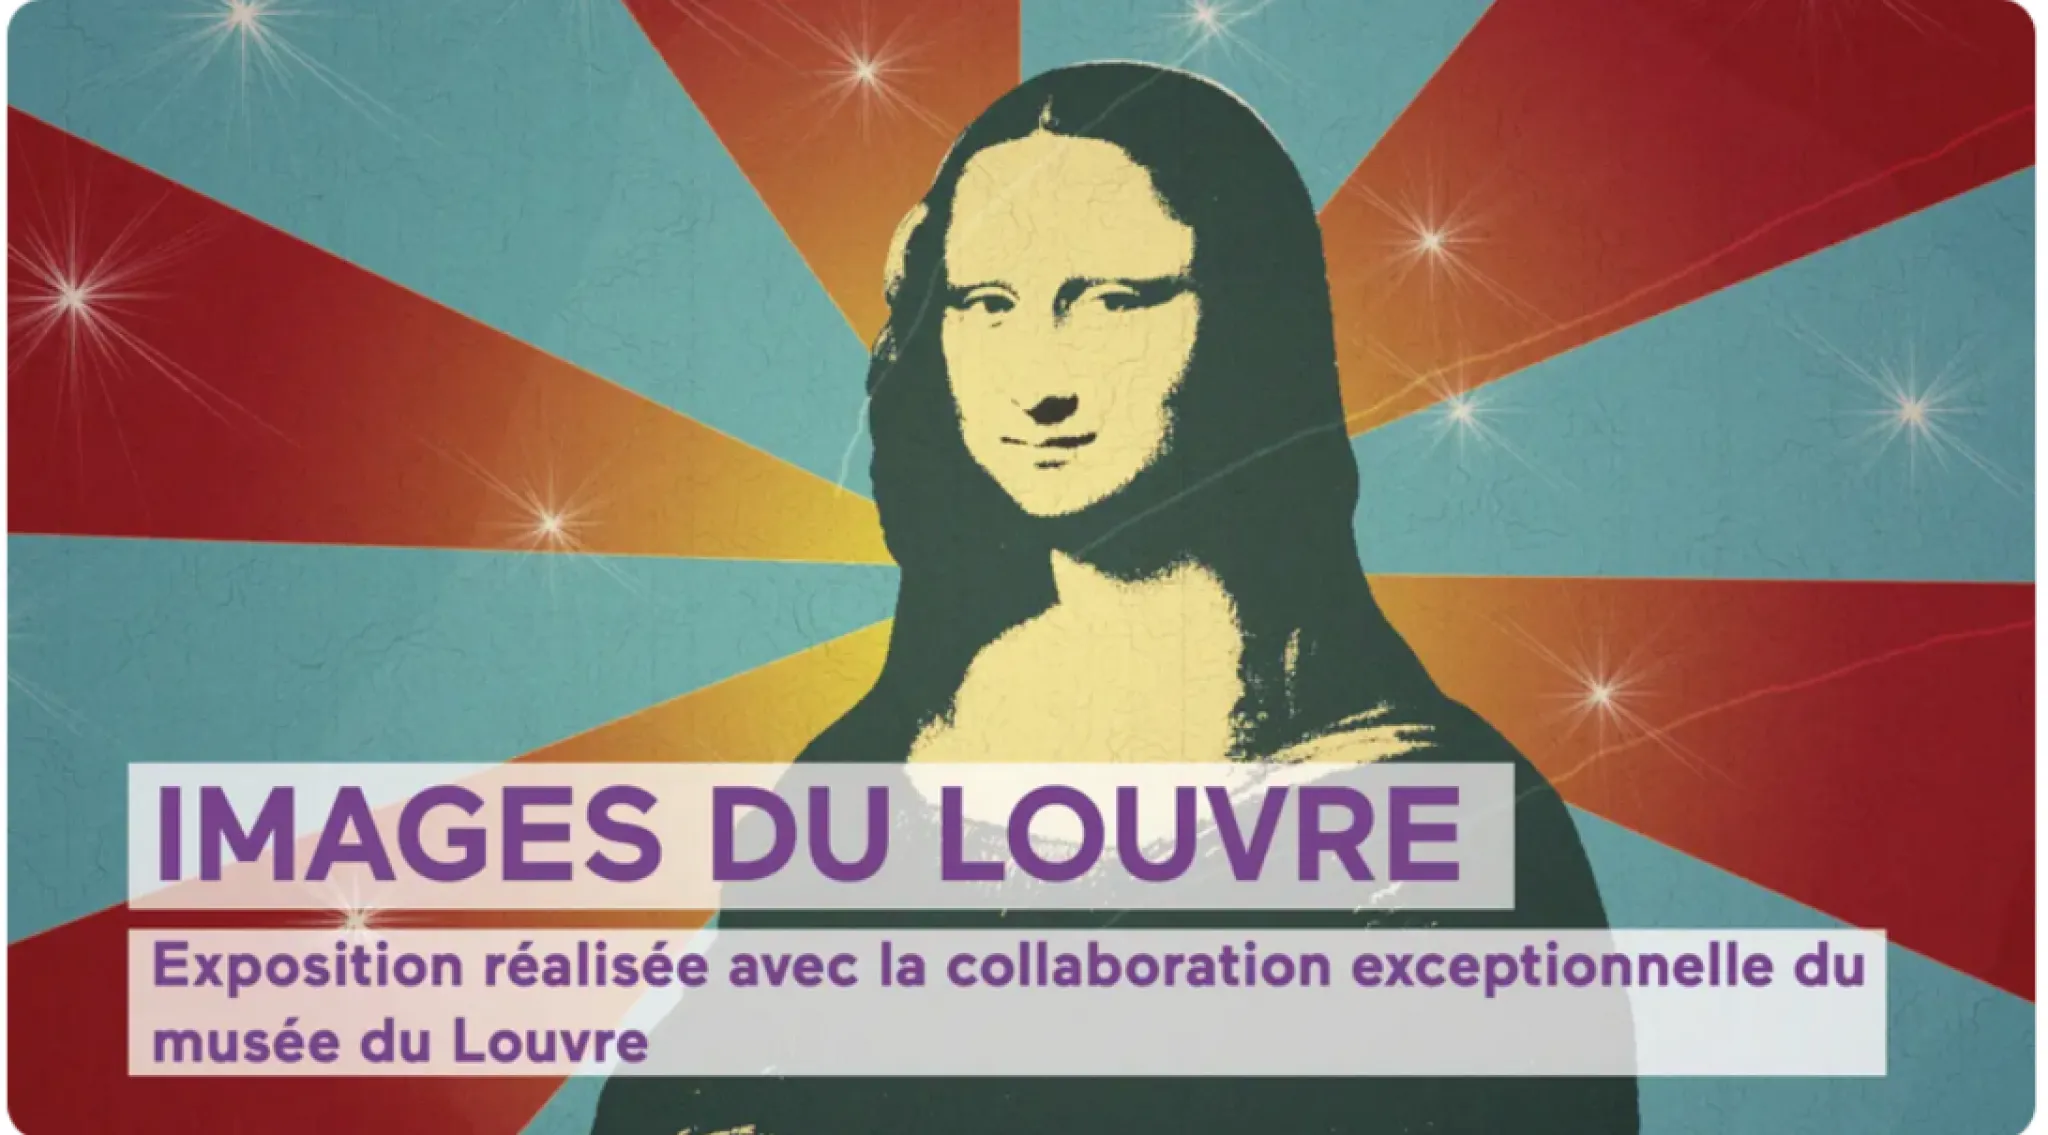 Visuel affiche images du Louvre